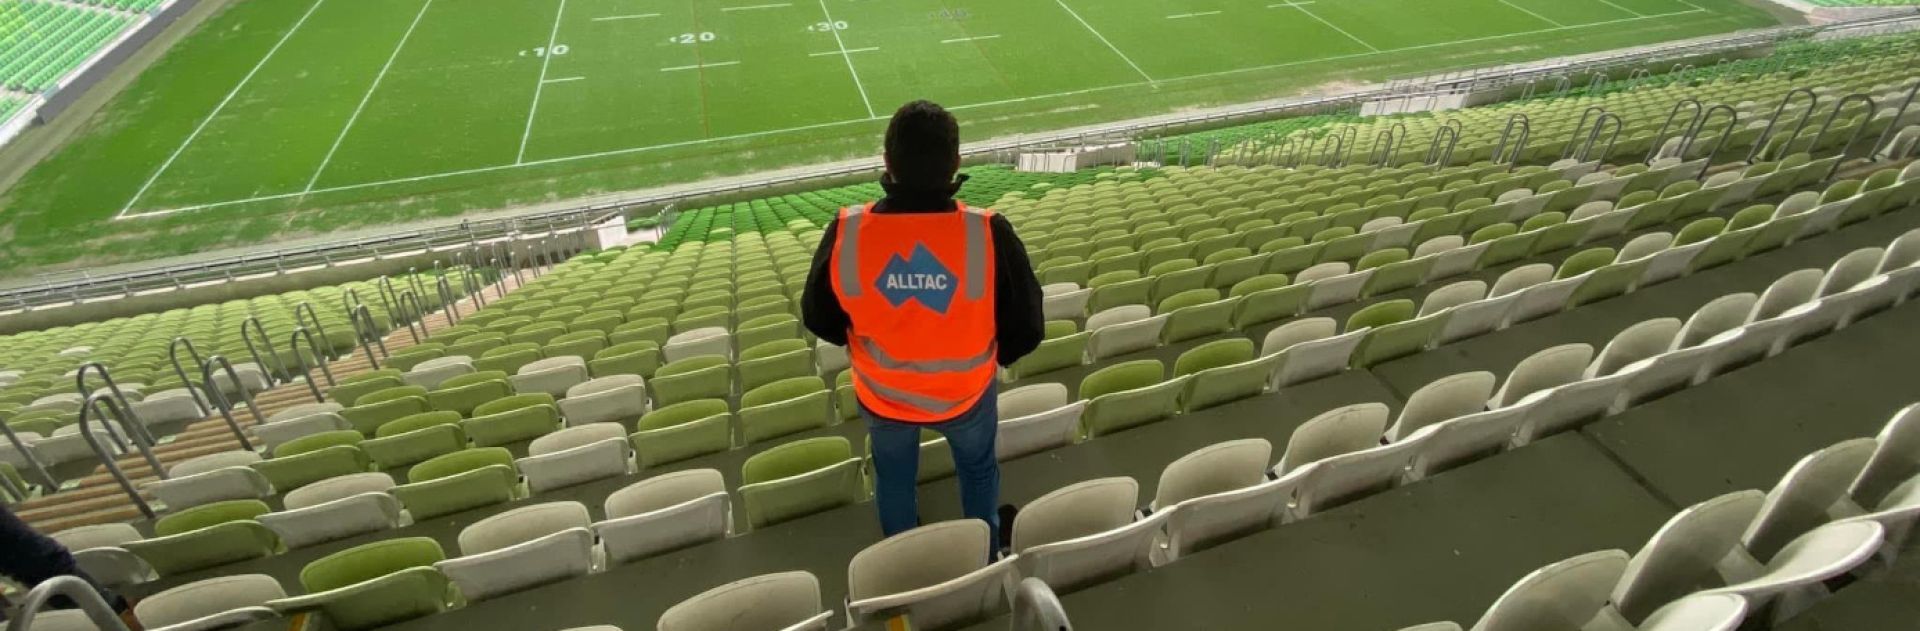 AAMI Stadium, Melbourne